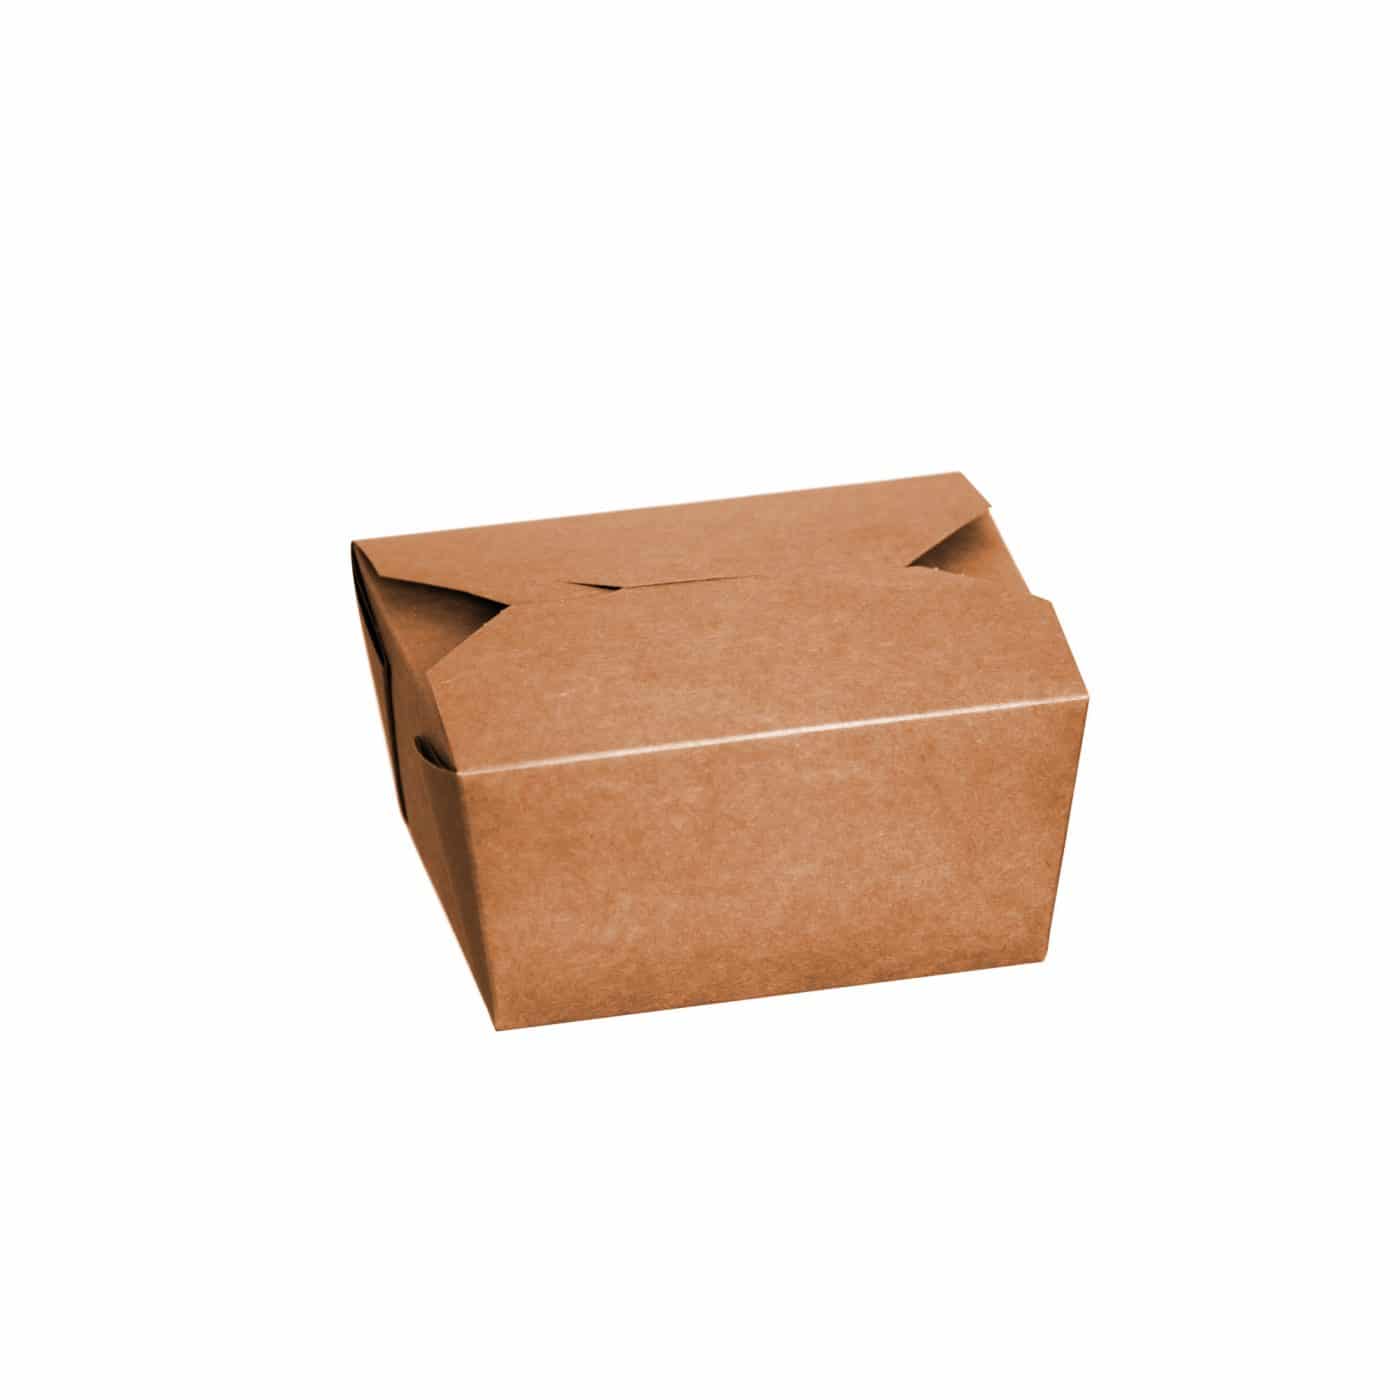 Kraft (Brown) Leakproof Food Carton (Code 1, AM106) - 26oz/734ml, pack of 450